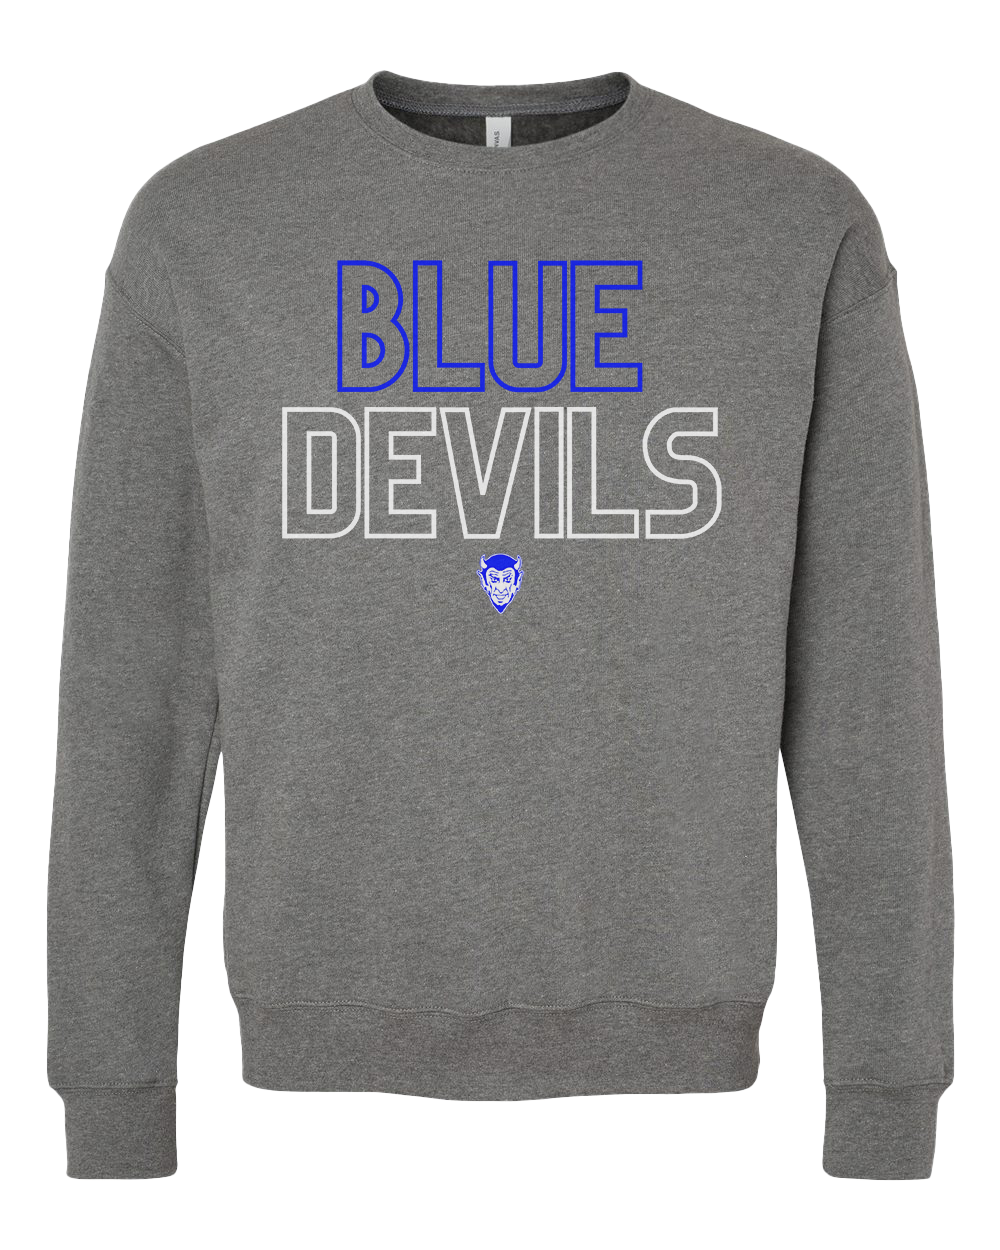 Tipton Blue Devils Crew Sweatshirt - Dark Heather